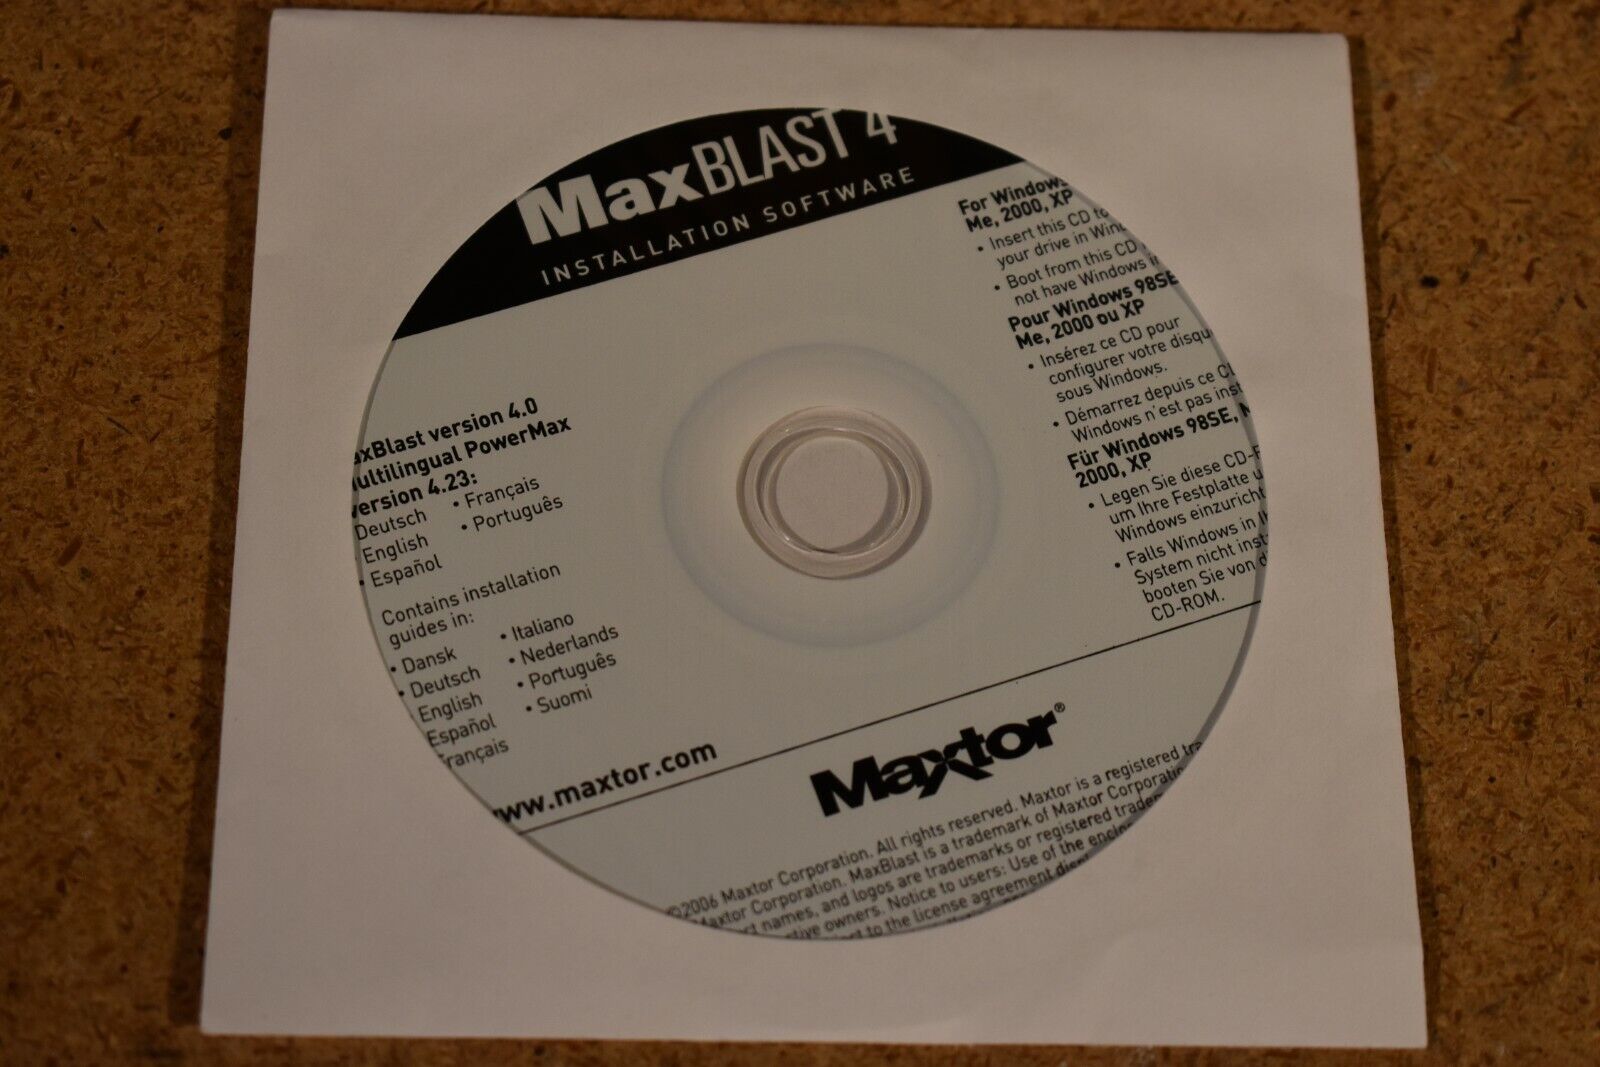 Maxtor Max Blast 4 Installation Software CD ROM